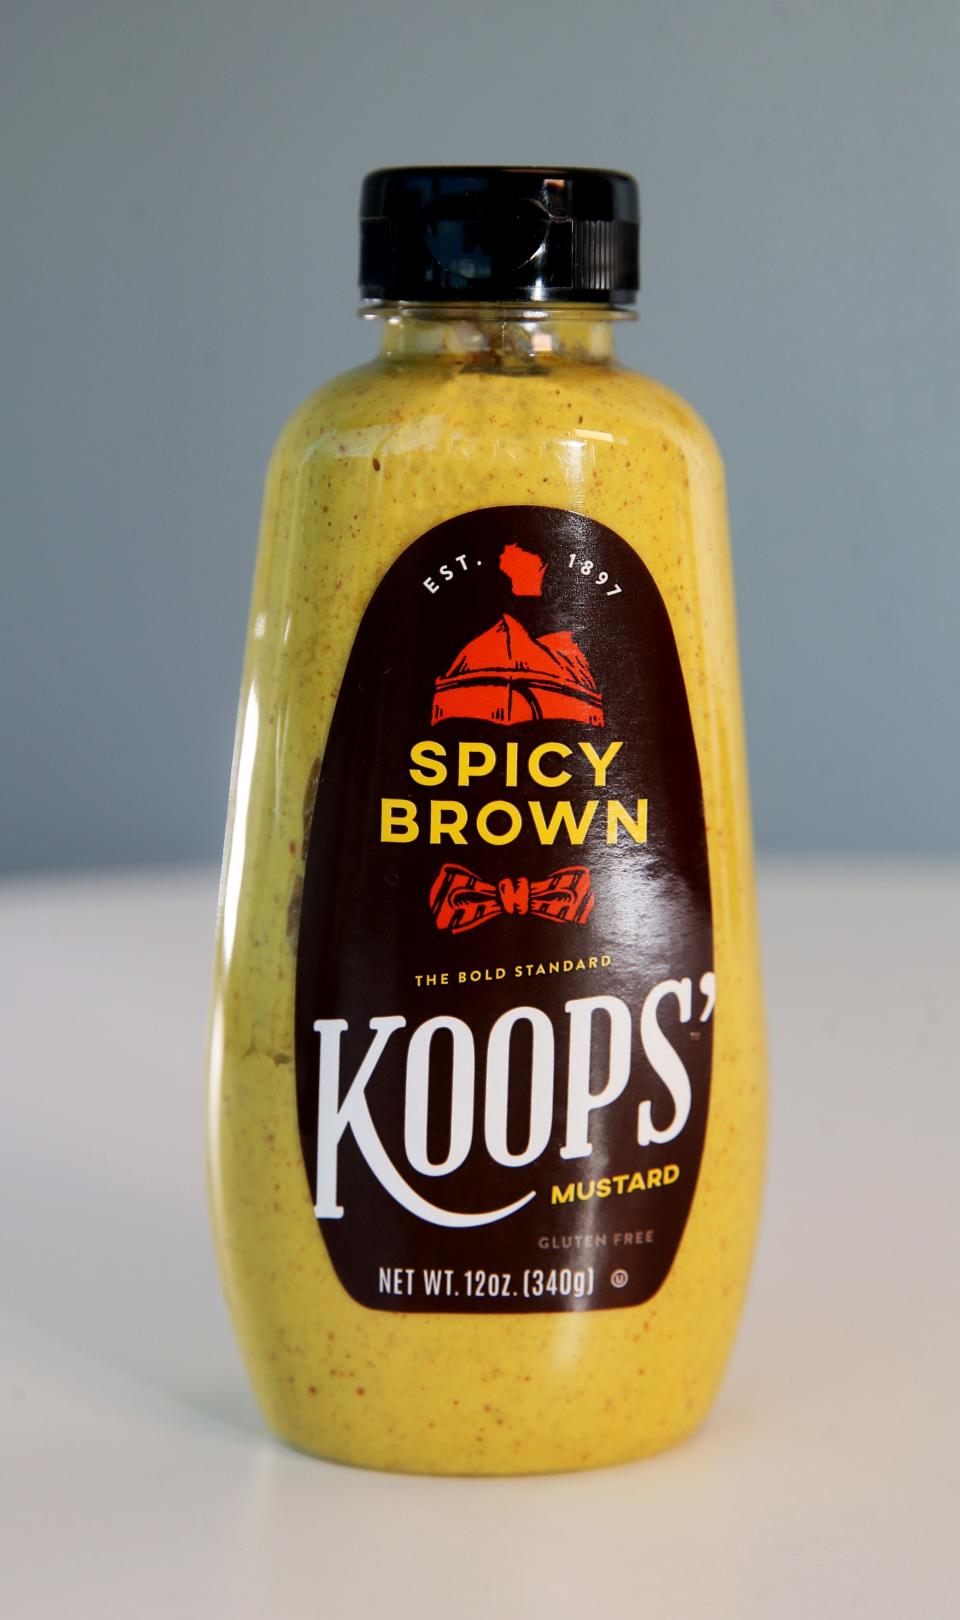 Koops' spicy brown mustard